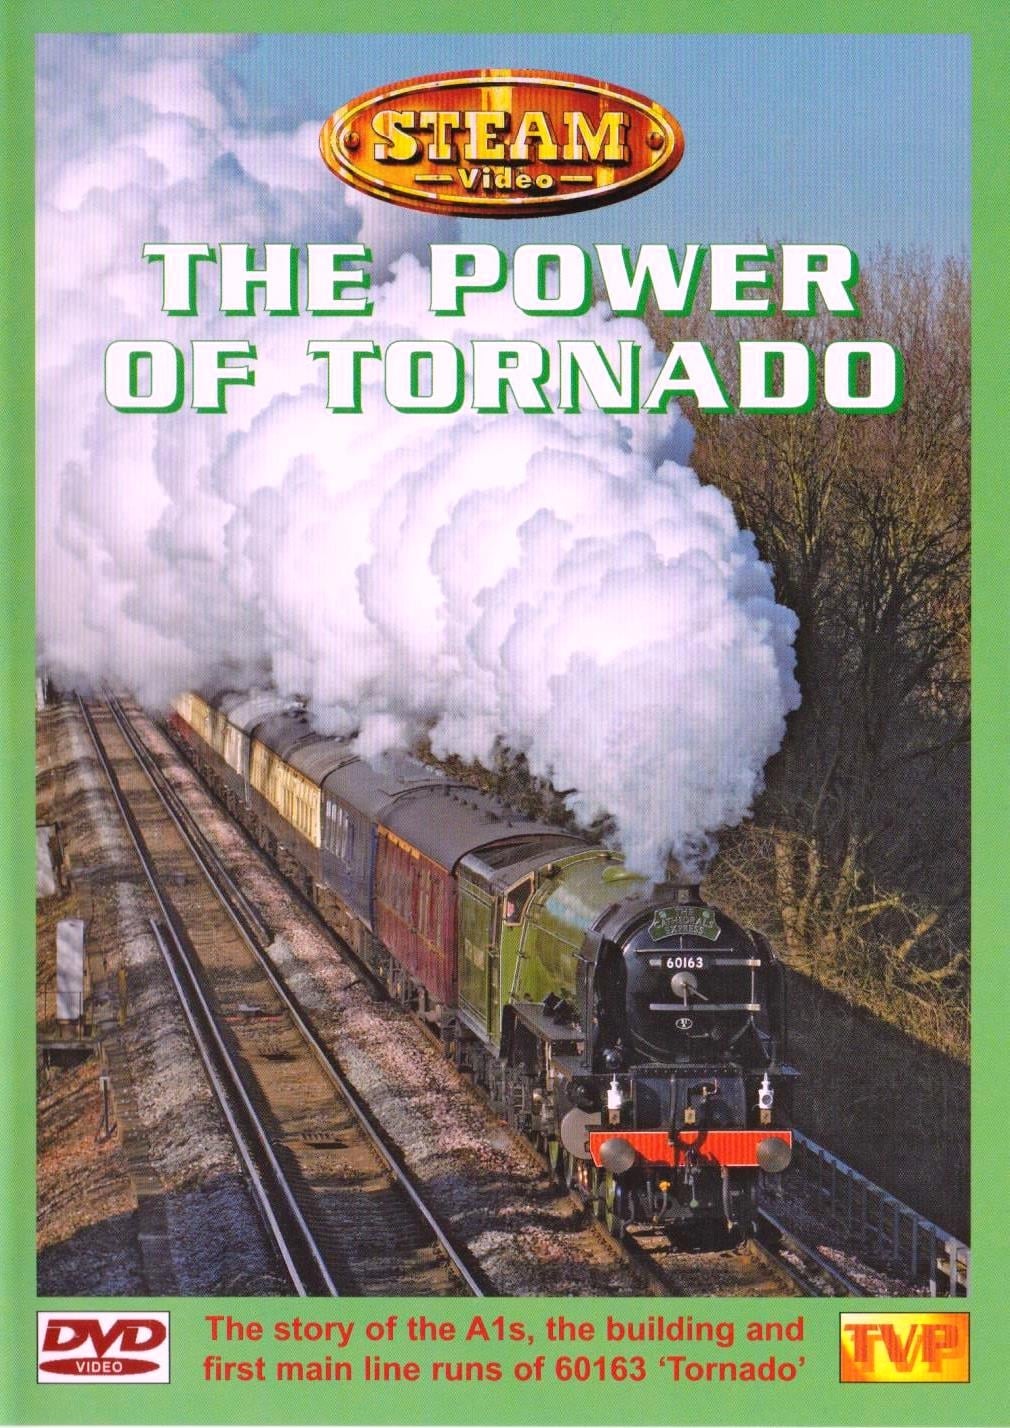 The Power of Tornado